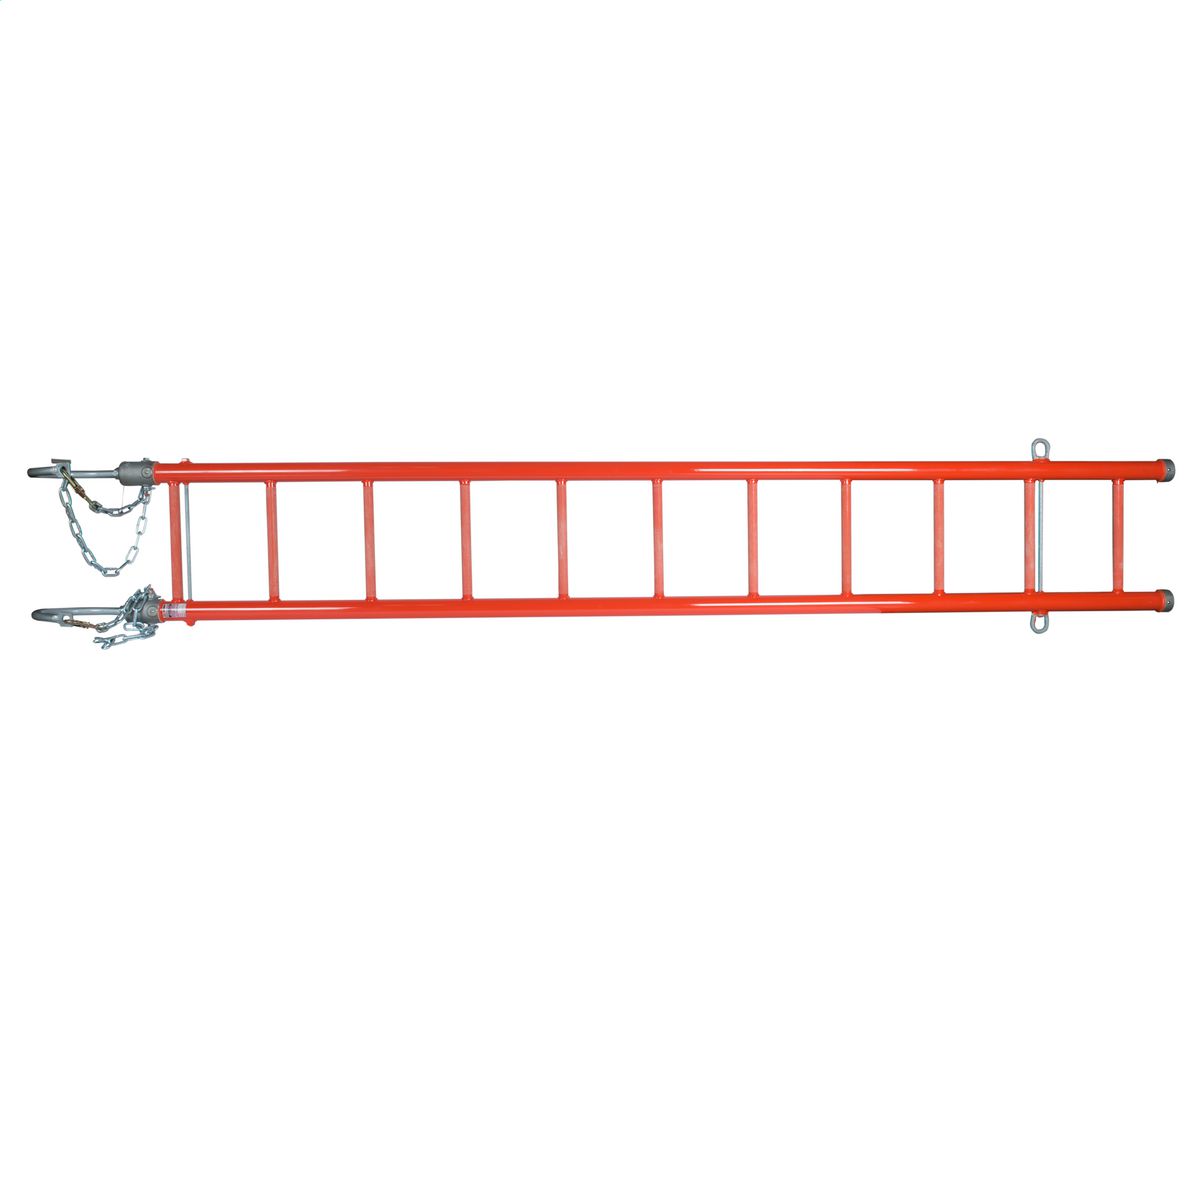 Epoxiglas Heavy Duty Swivel Hook Ladder W/14 Hooks, 10', H490510A